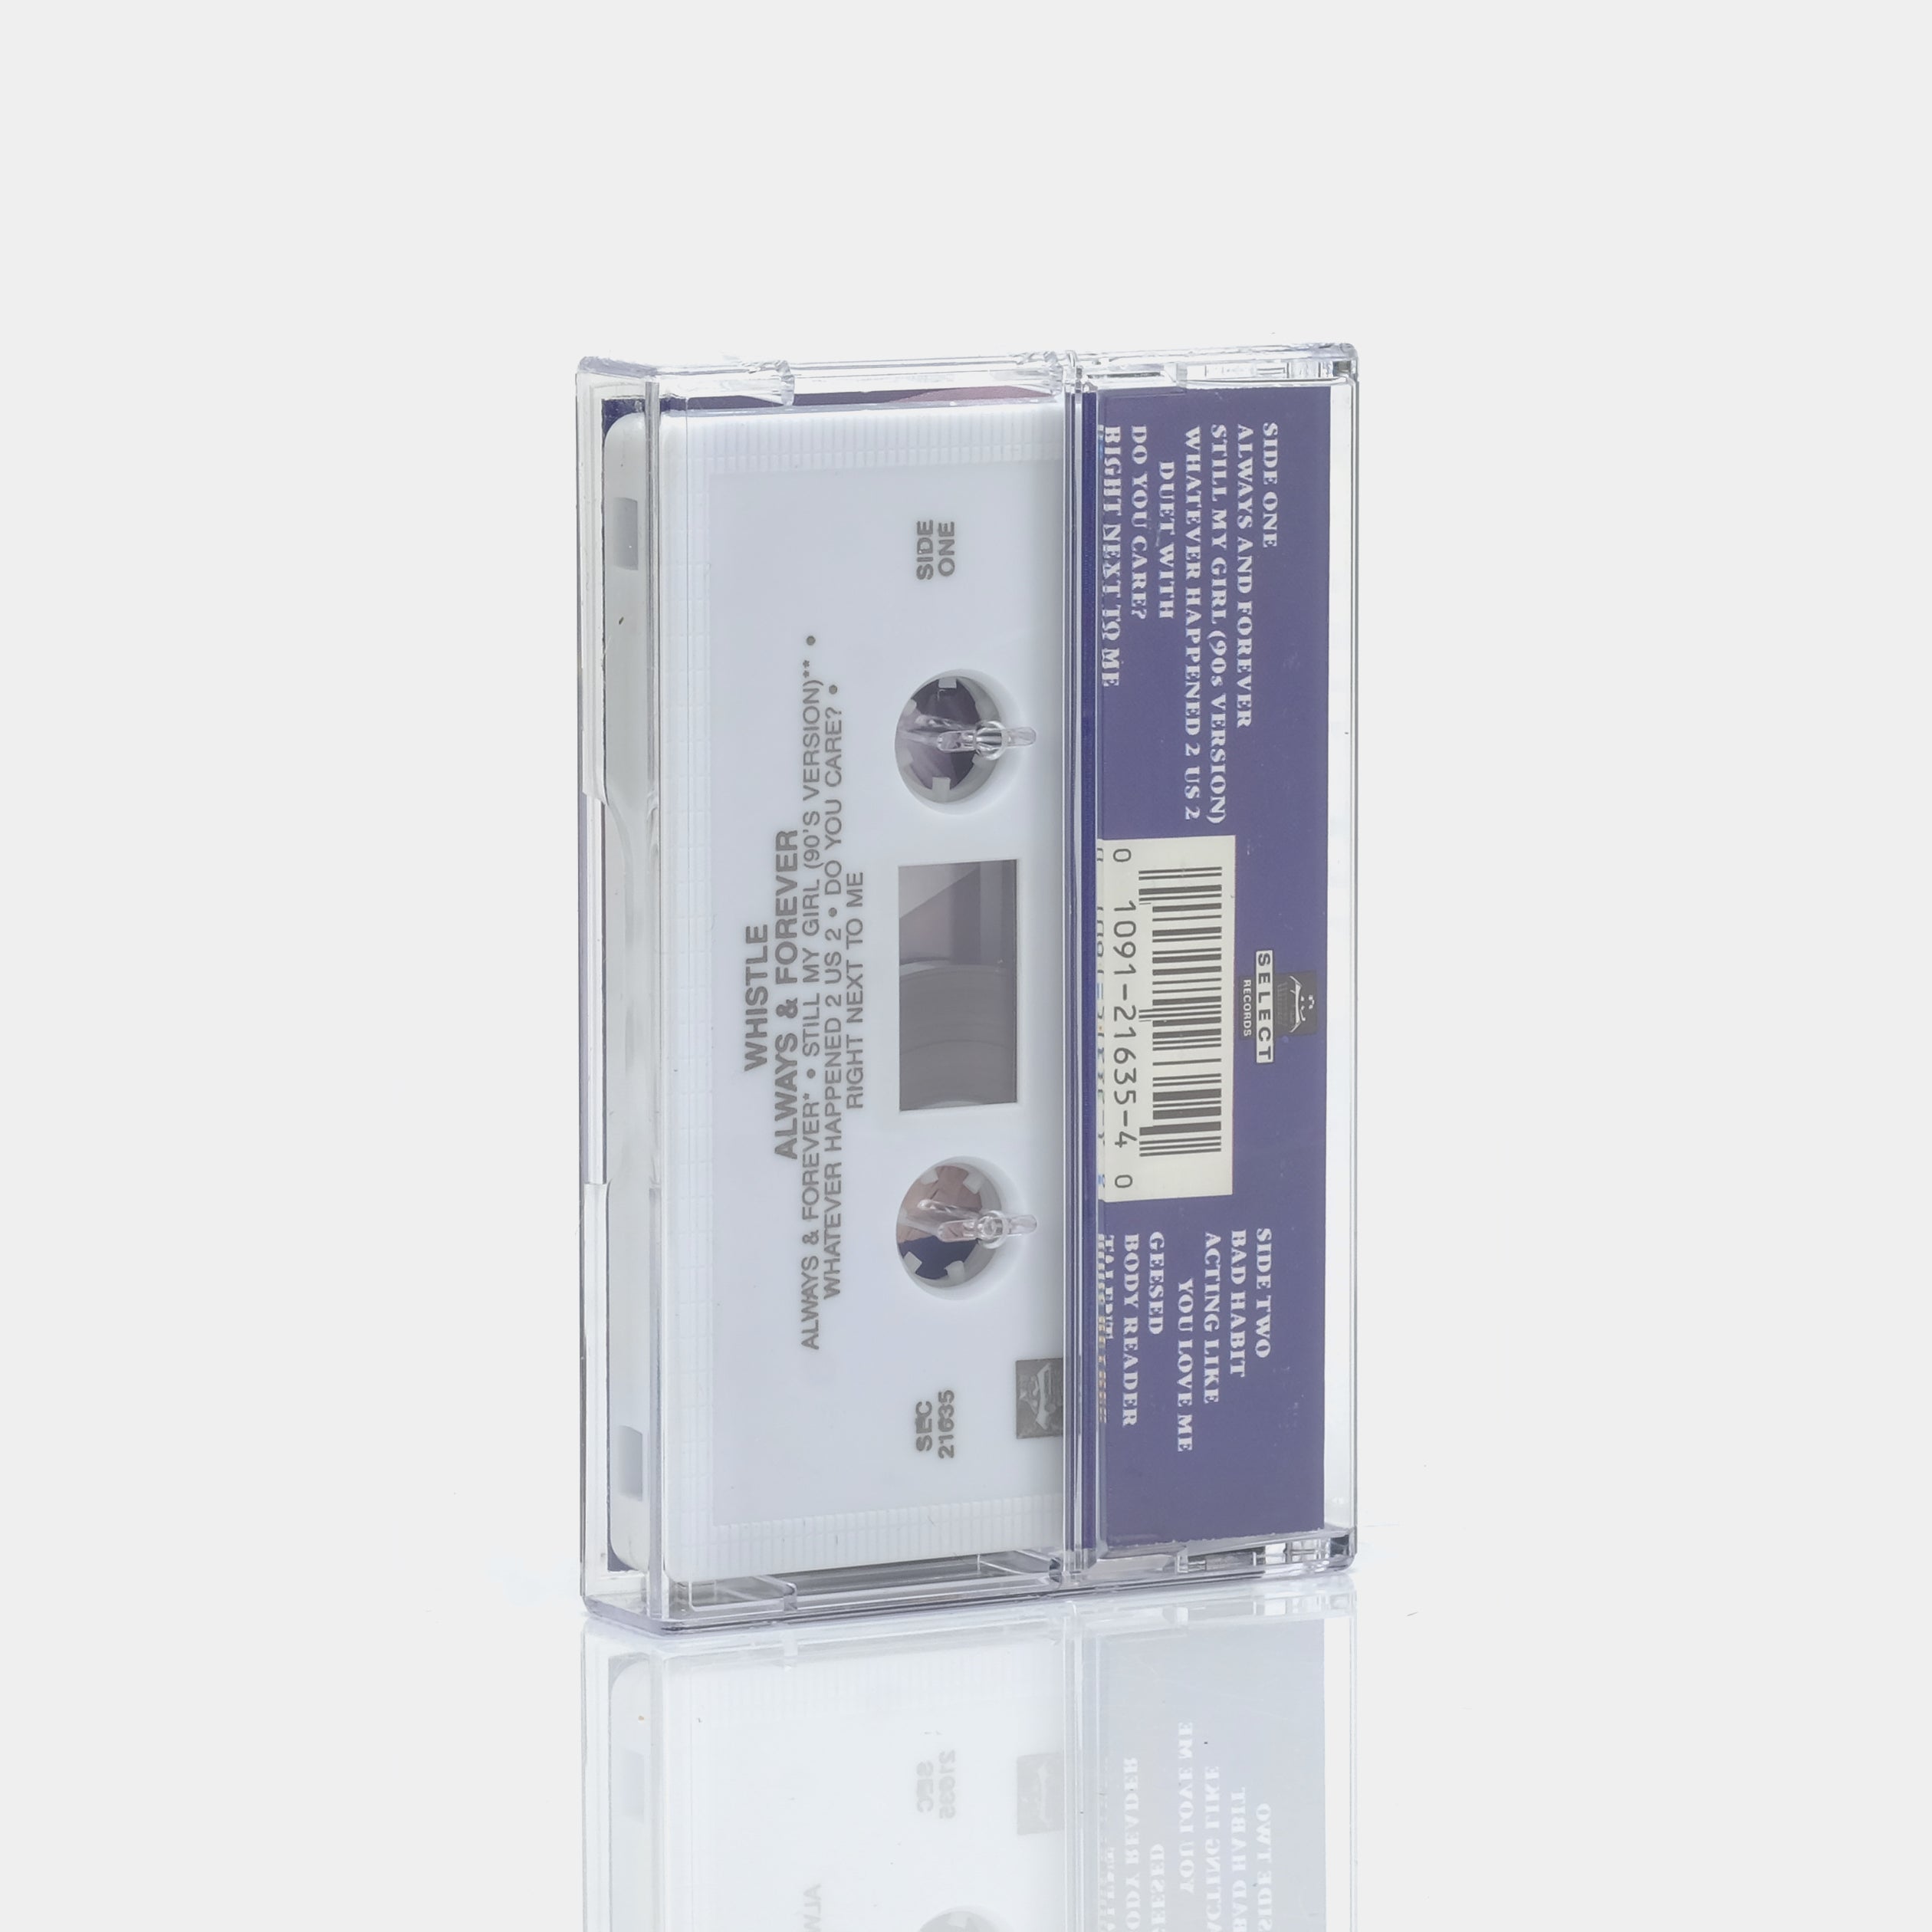 Whistle - Always & Forever Cassette Tape